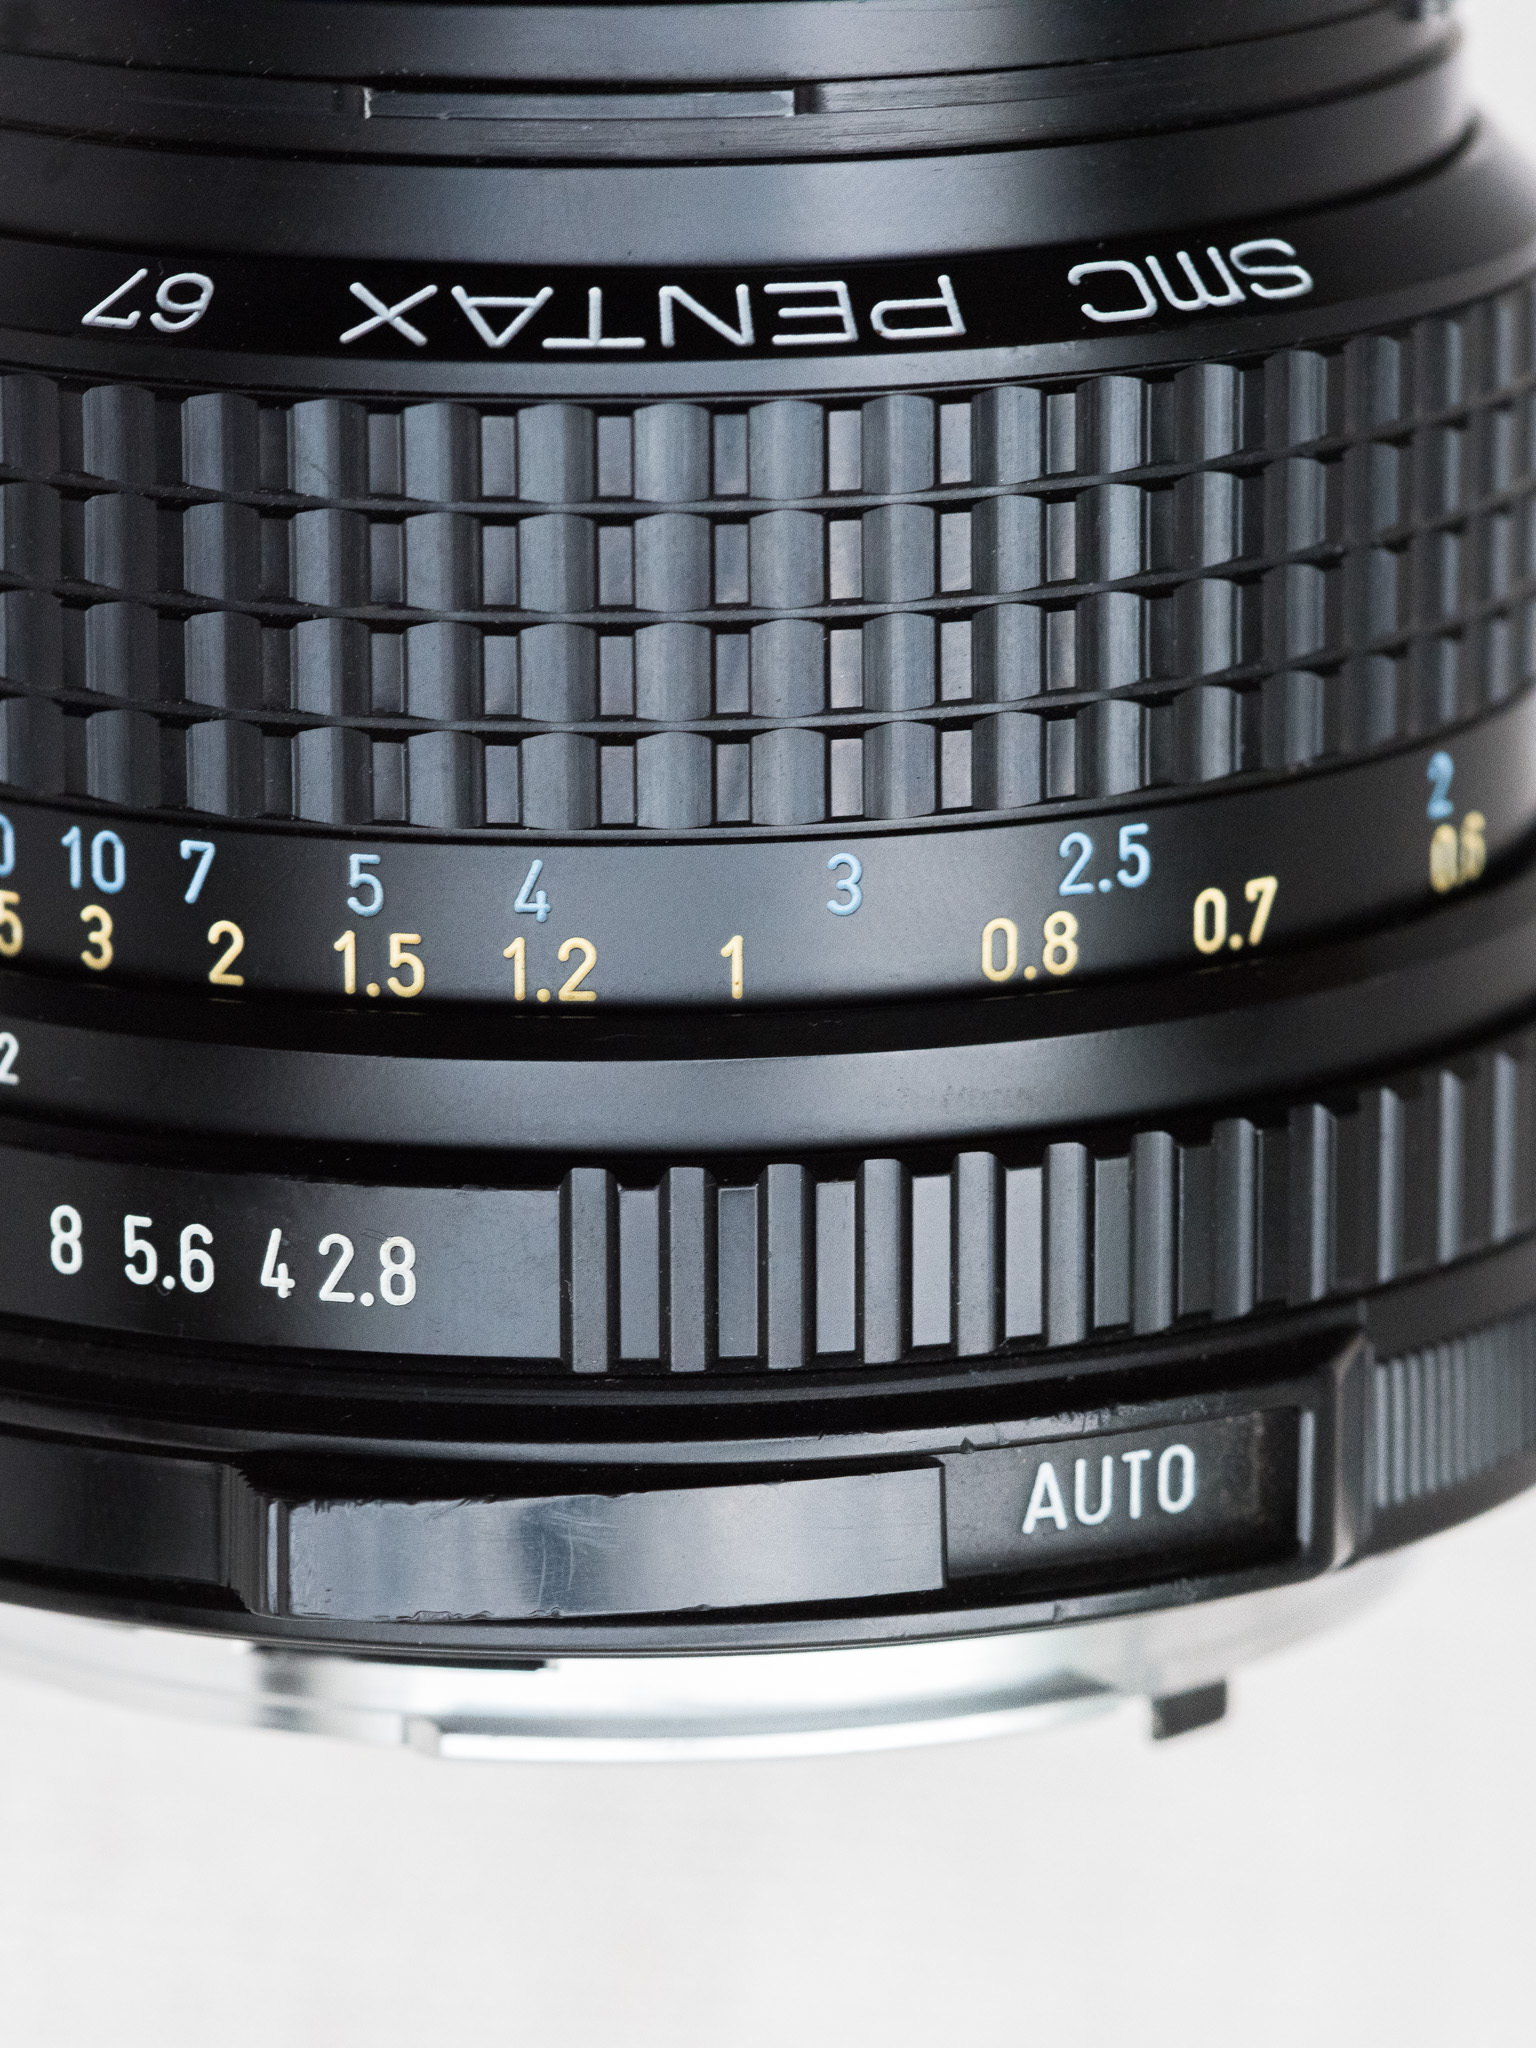 Pentax 67 SMC 75mm f/2.8 AL Lens Review